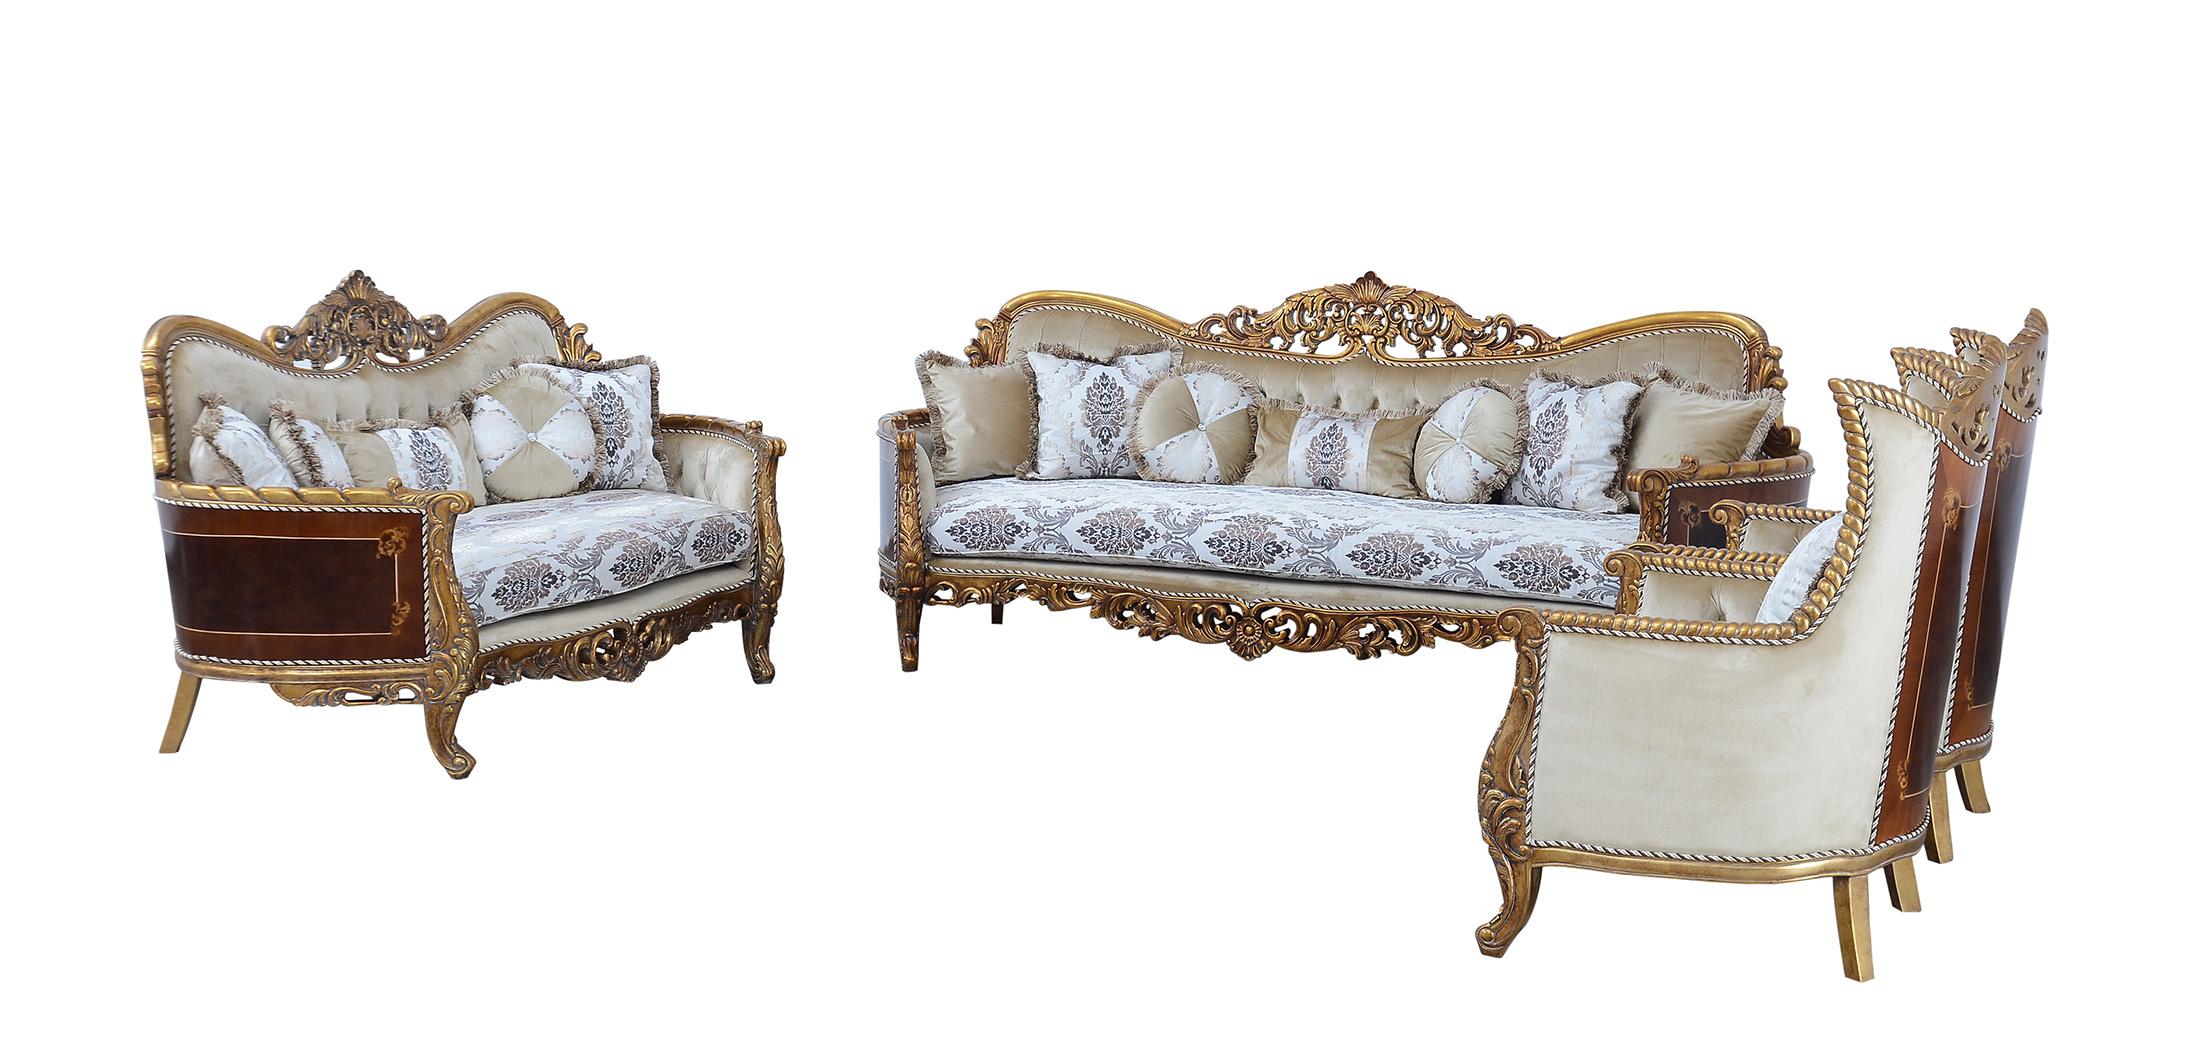 Classic, Traditional Sofa Set MAGGIOLINI 31054-Set-4 in Antique, Bronze, Beige Fabric